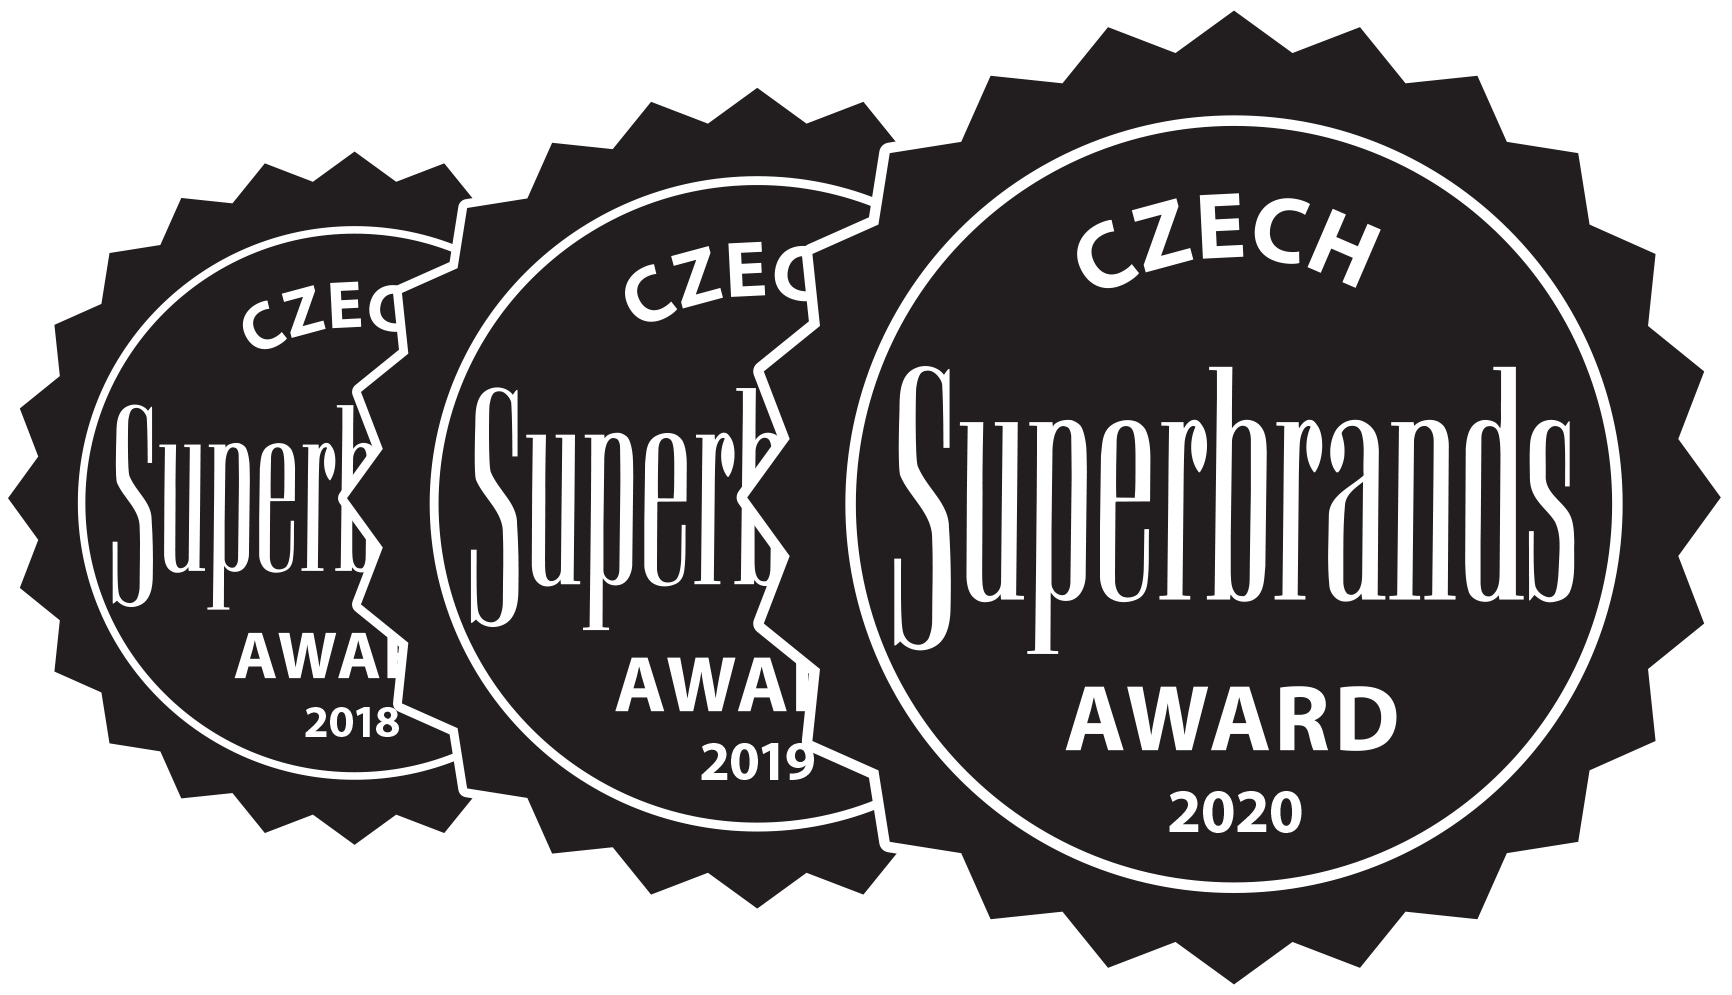 Značky Babiččiny nudle a Babiččiny těstoviny získaly potřetí v řadě ocenění Czech Superbrands